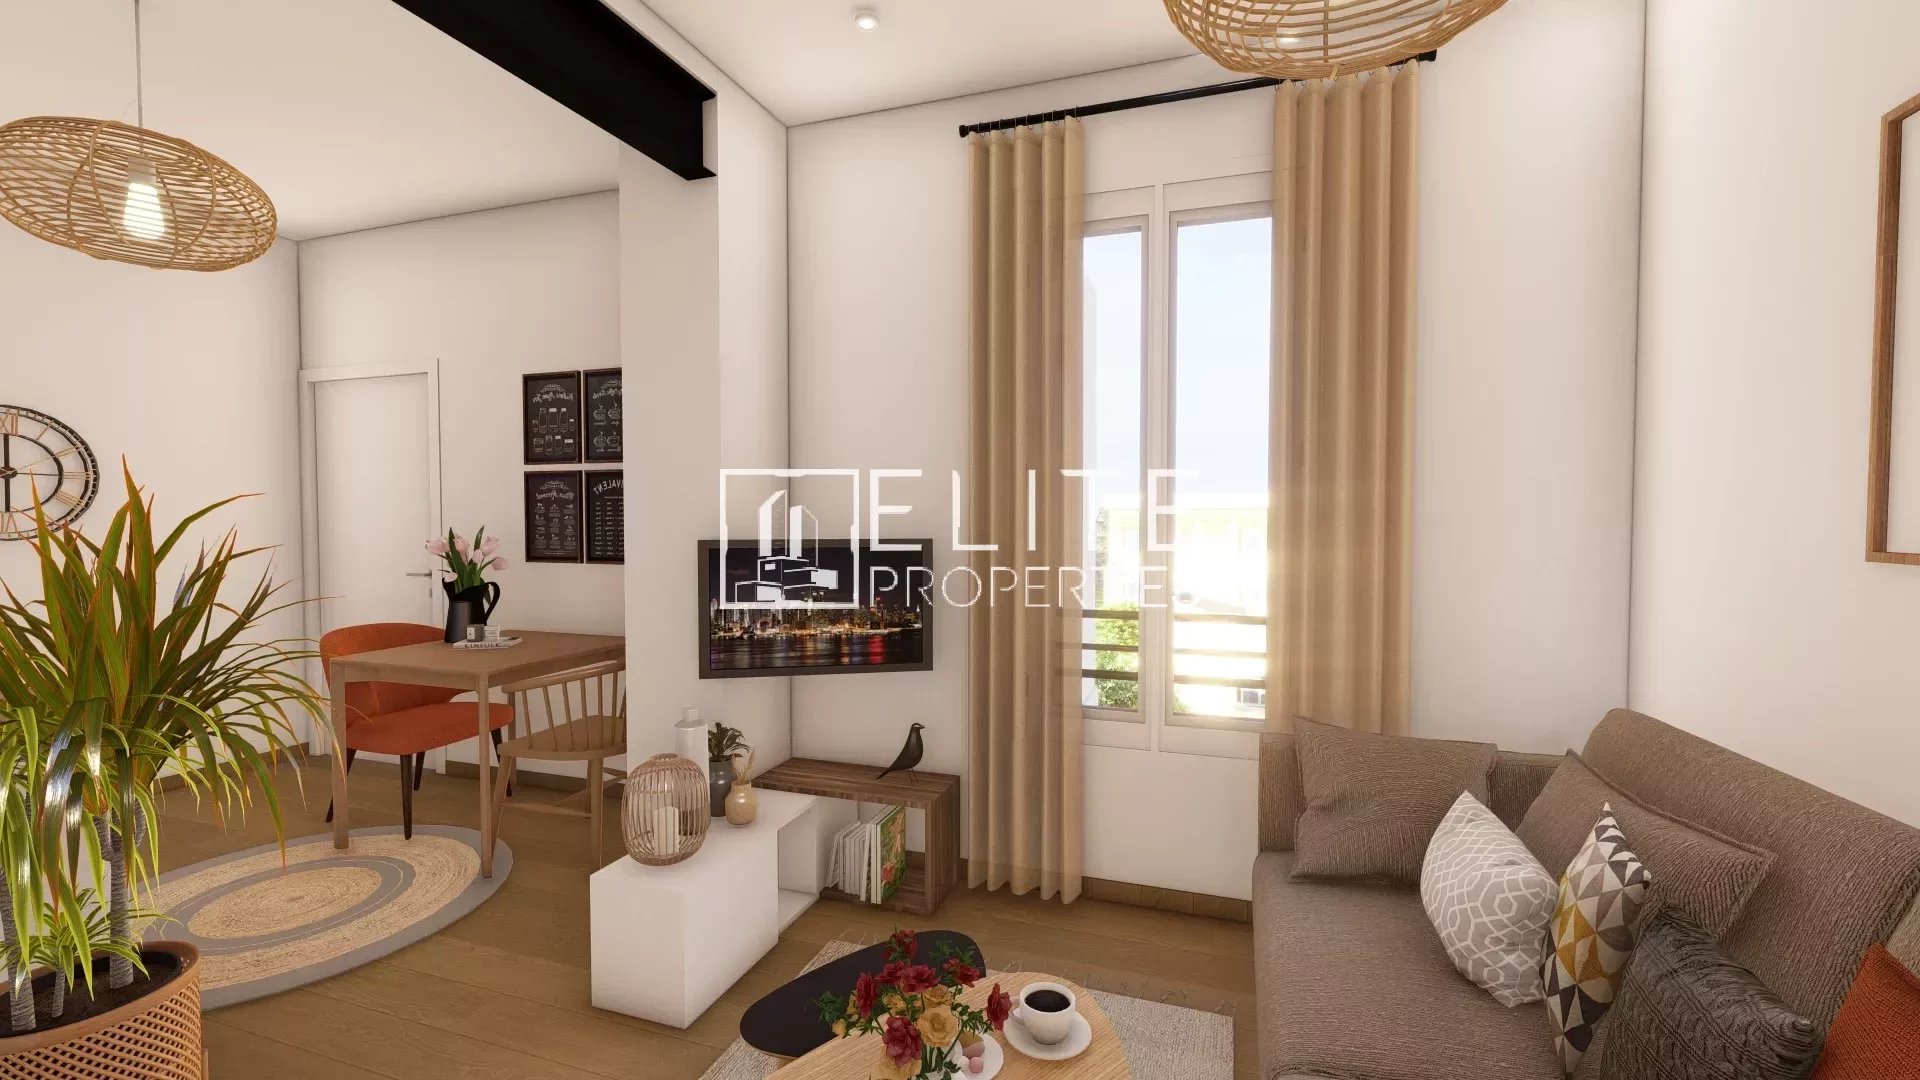 Sale Housing estate - Cannes Croix des Gardes